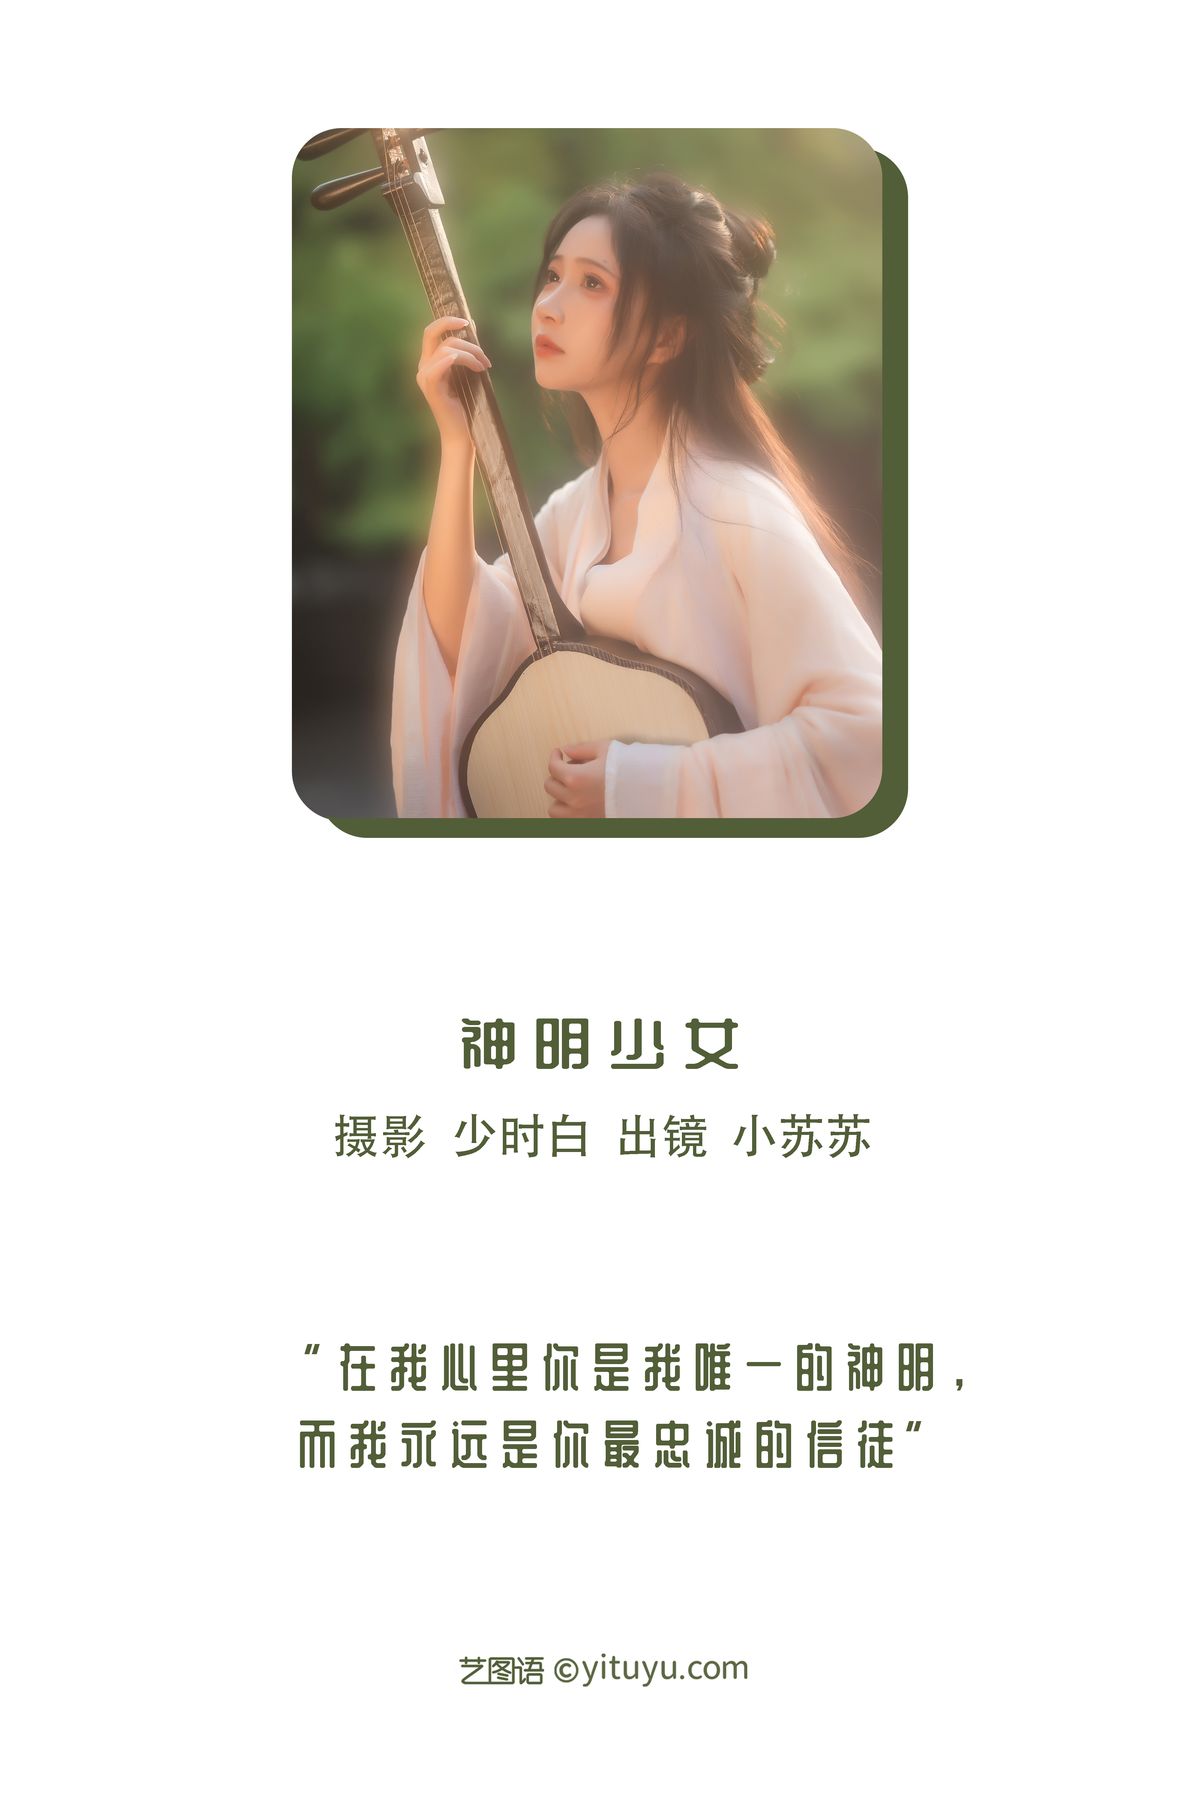 YiTuYu艺图语 Vol 3056 Qi Luo Sheng De Xiao Su Su 0001 8560833346.jpg